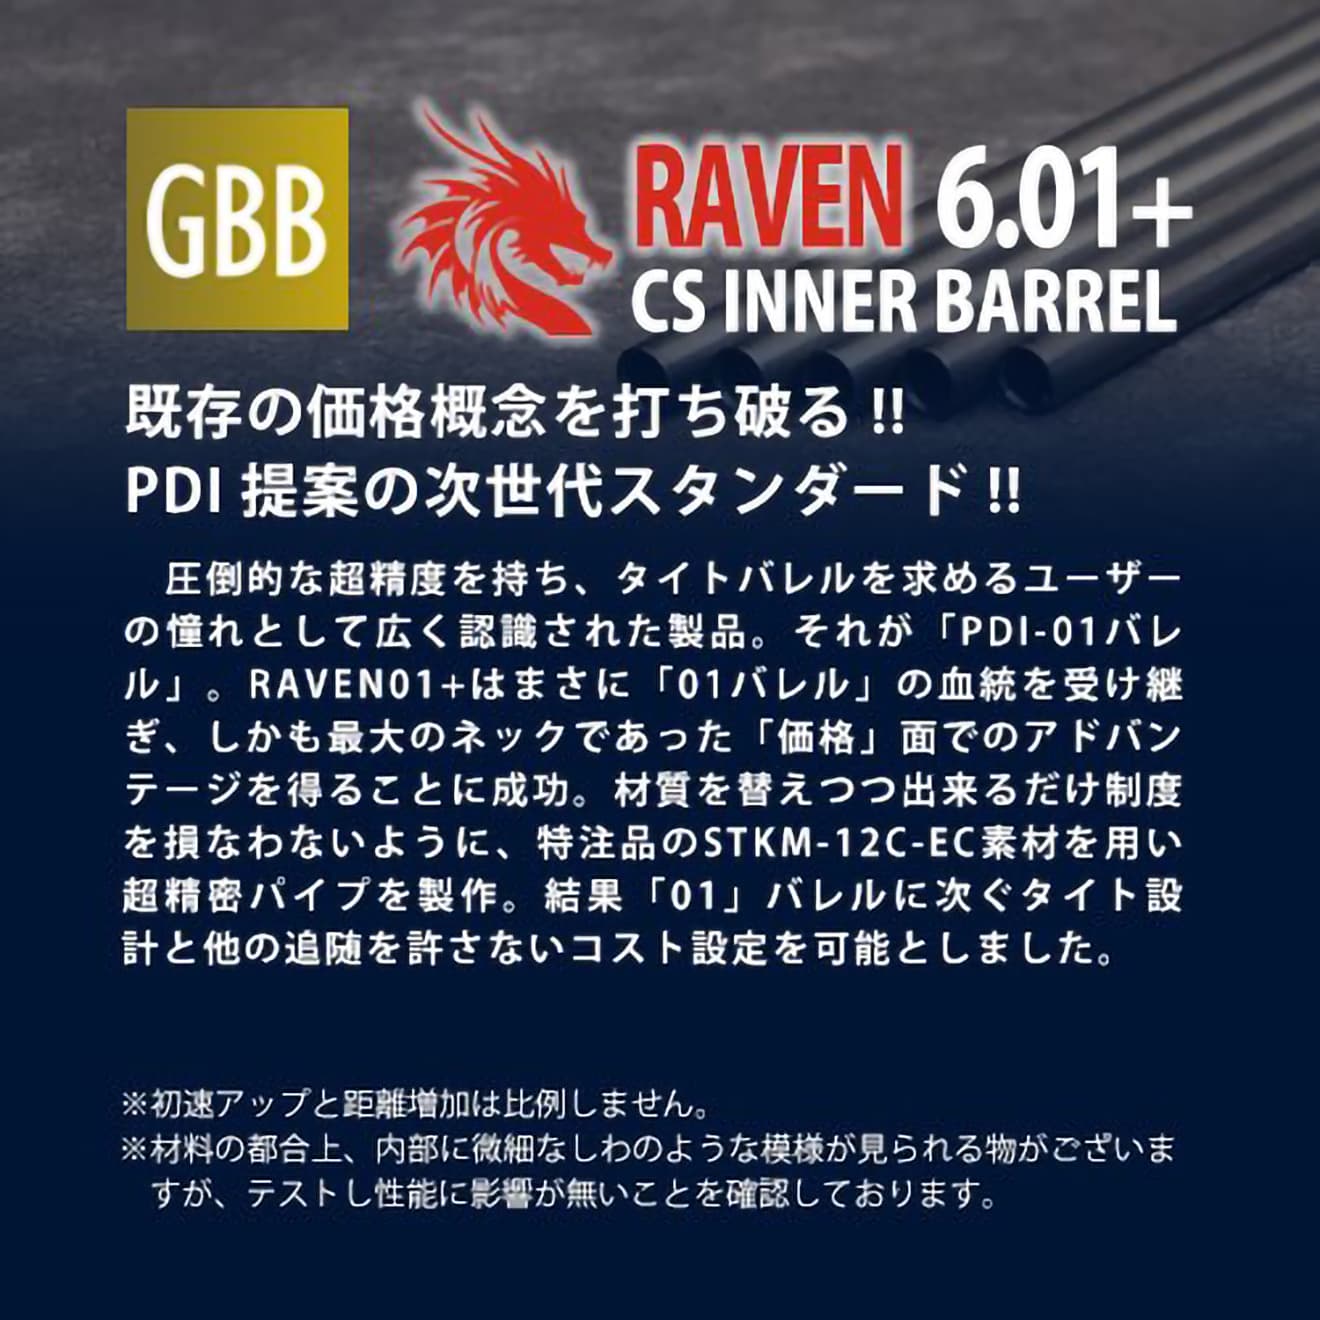 PDI RAVENシリーズ 01+ GBB DE.50専用 精密インナーバレル(6.01±0.007) 136mm